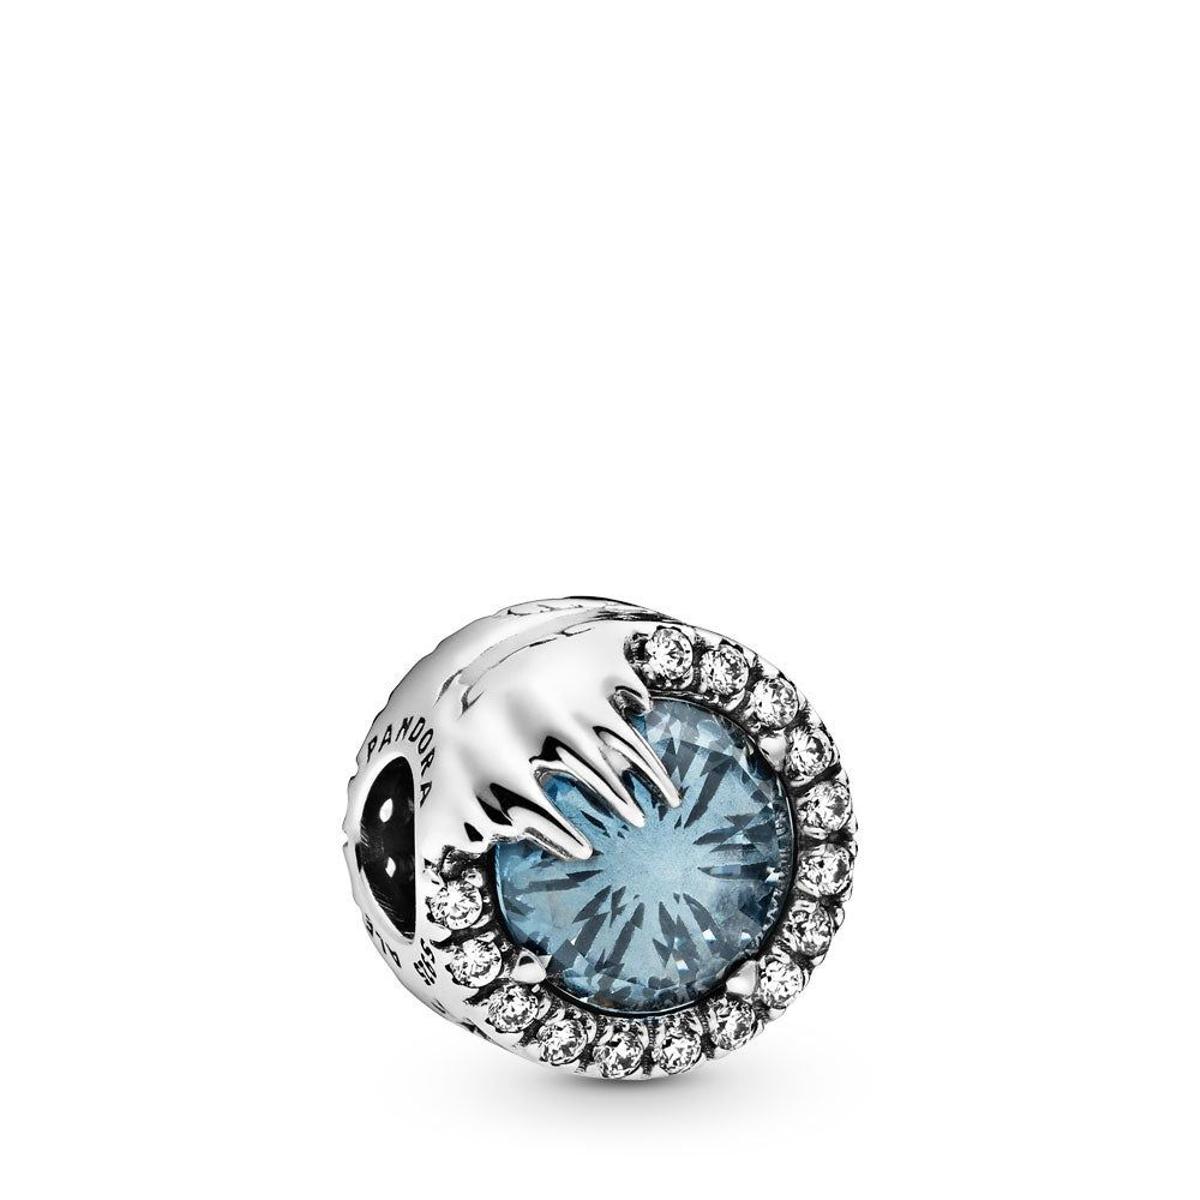 'Charm' cristal de invierno con circonitas y cristal azul (Precio: 89,00 euros)